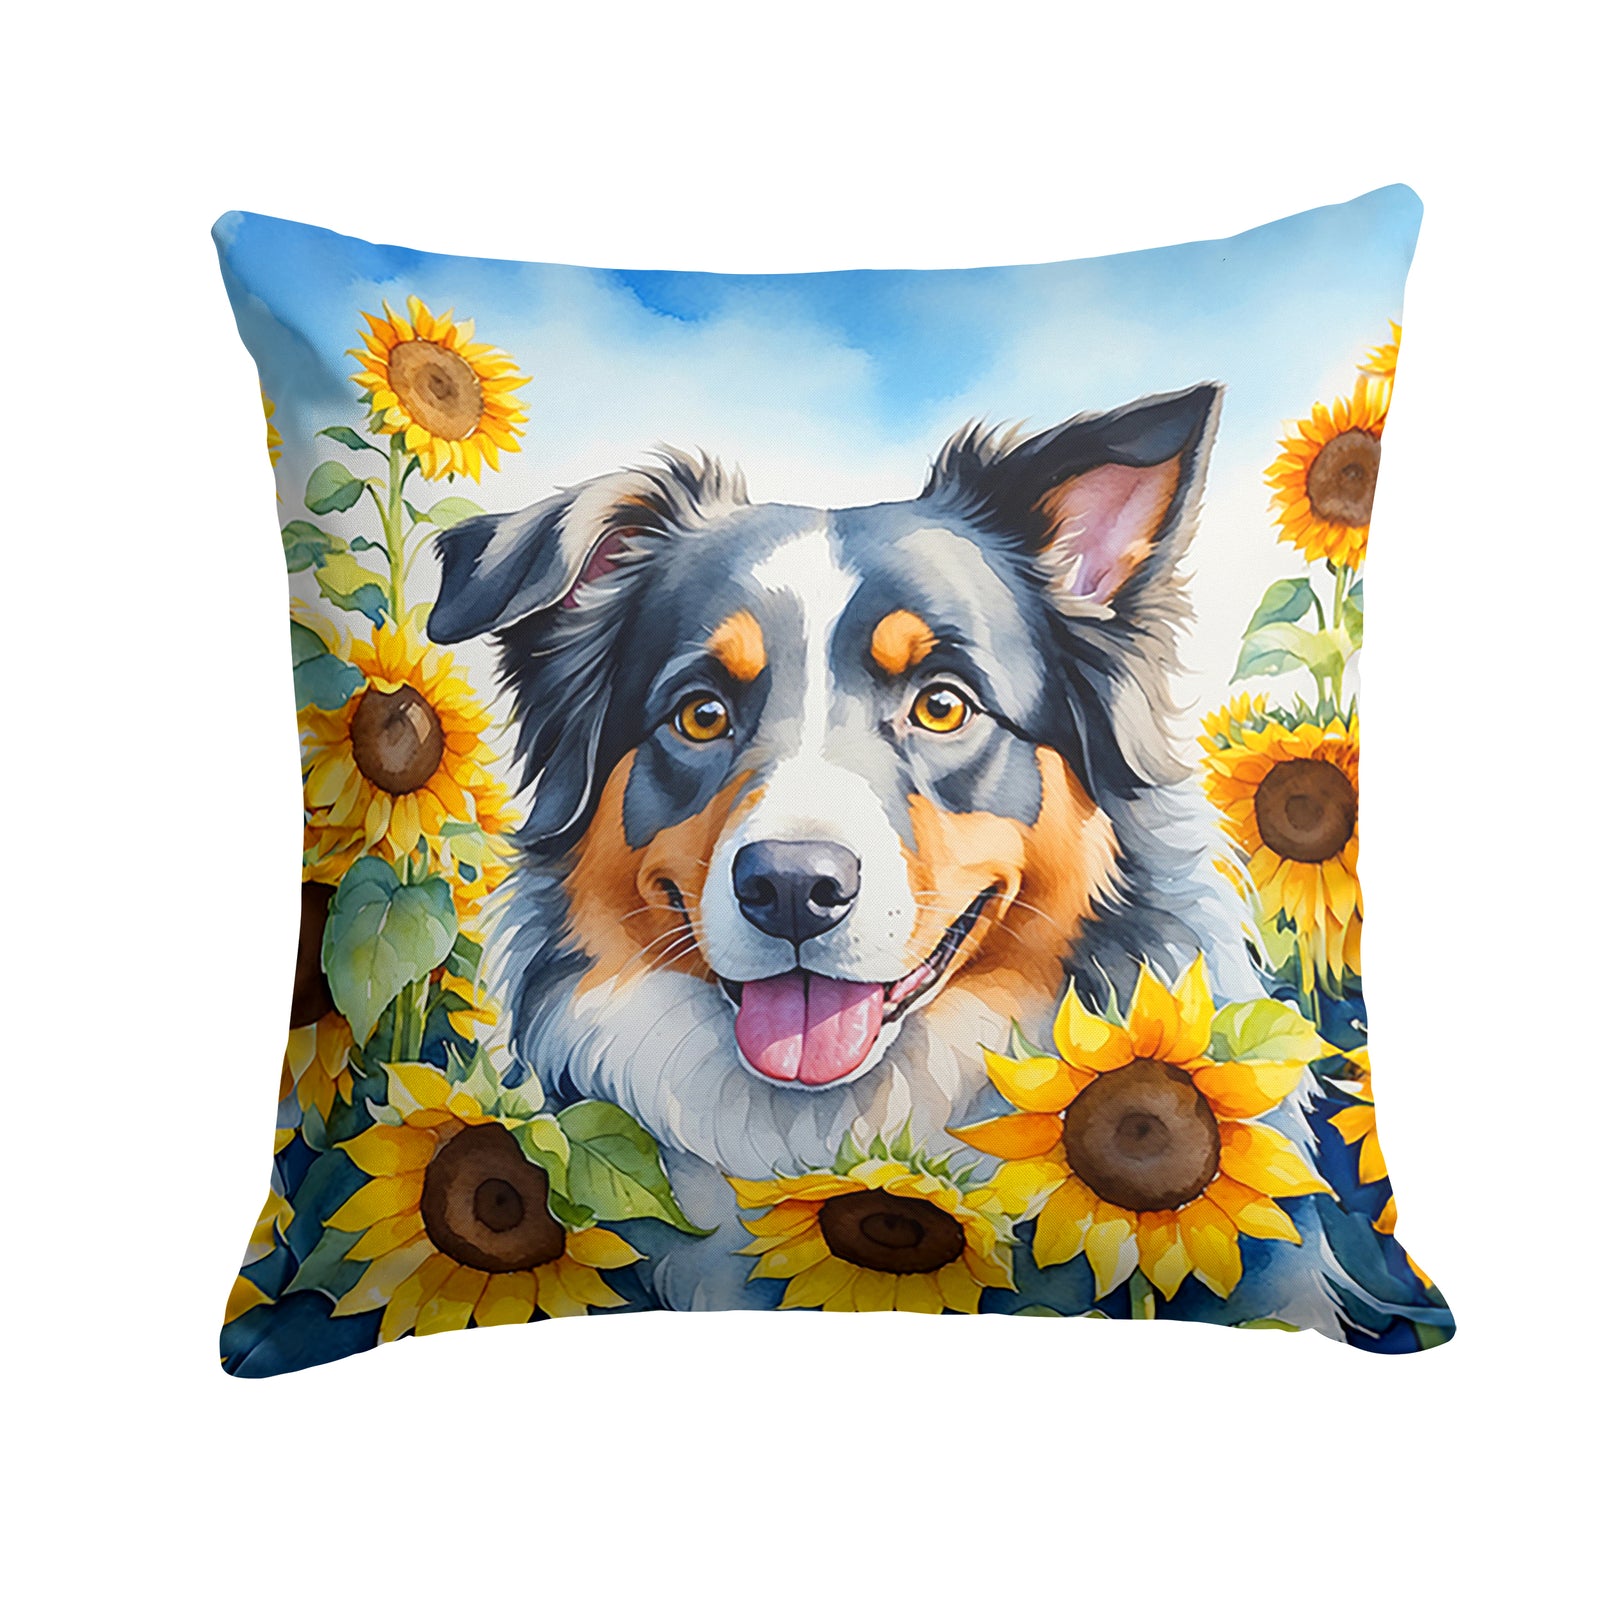 Buy this Australian Shepherd in Sunflowers Throw Pillow